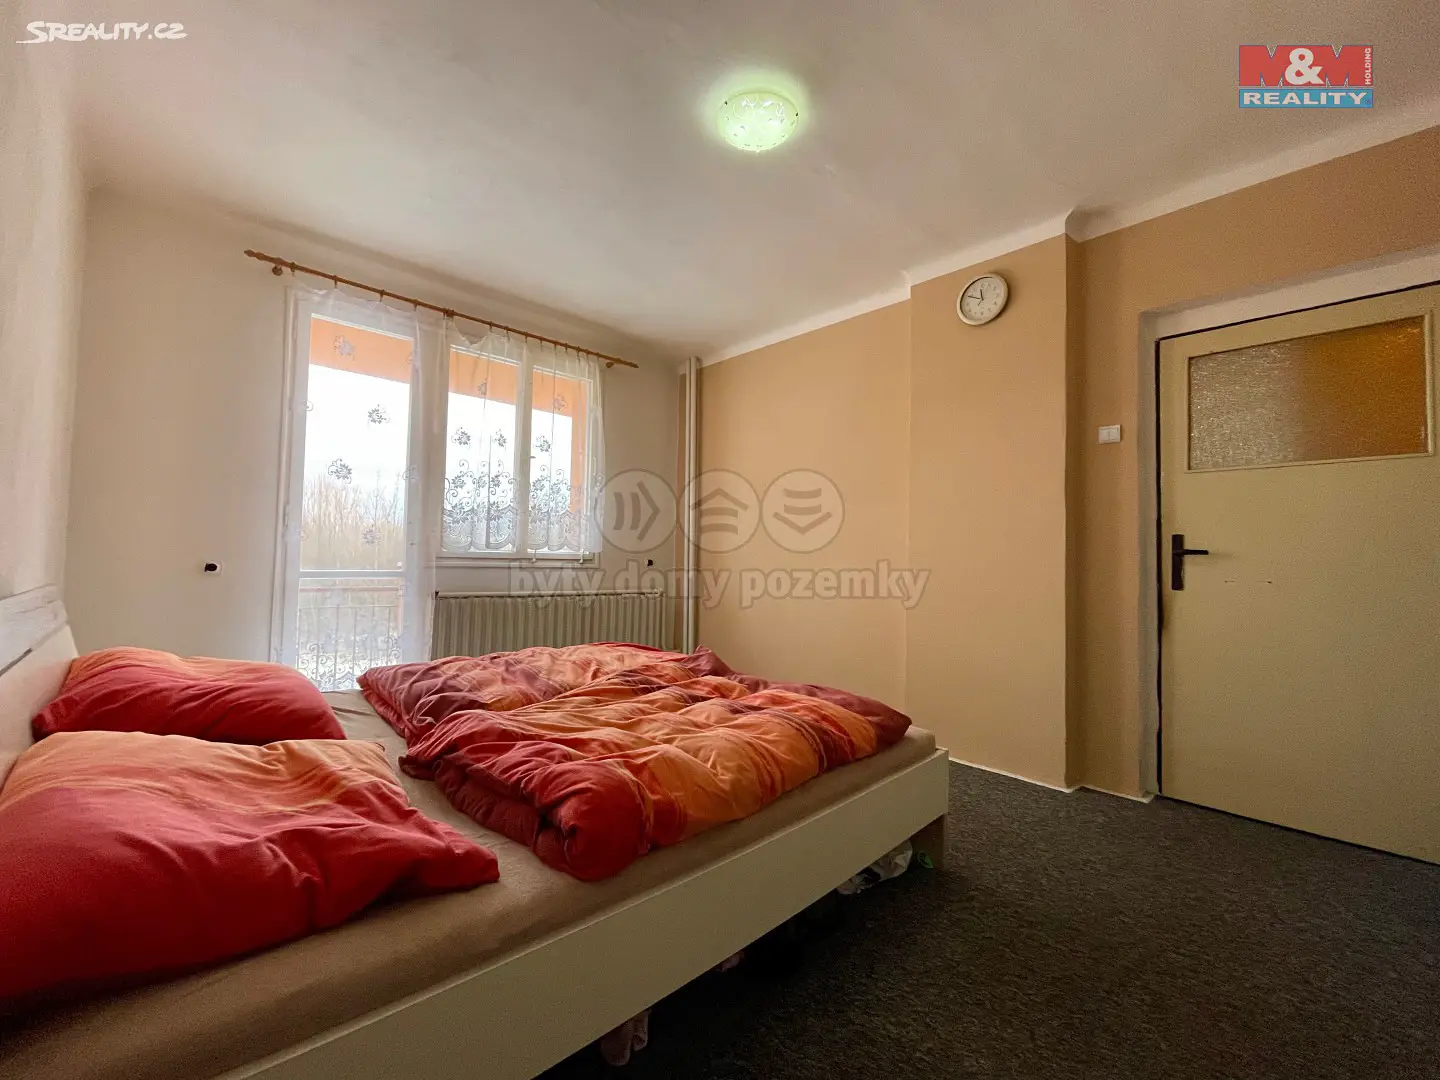 Prodej bytu 4+1 102 m², Borotín - Libenice, okres Tábor